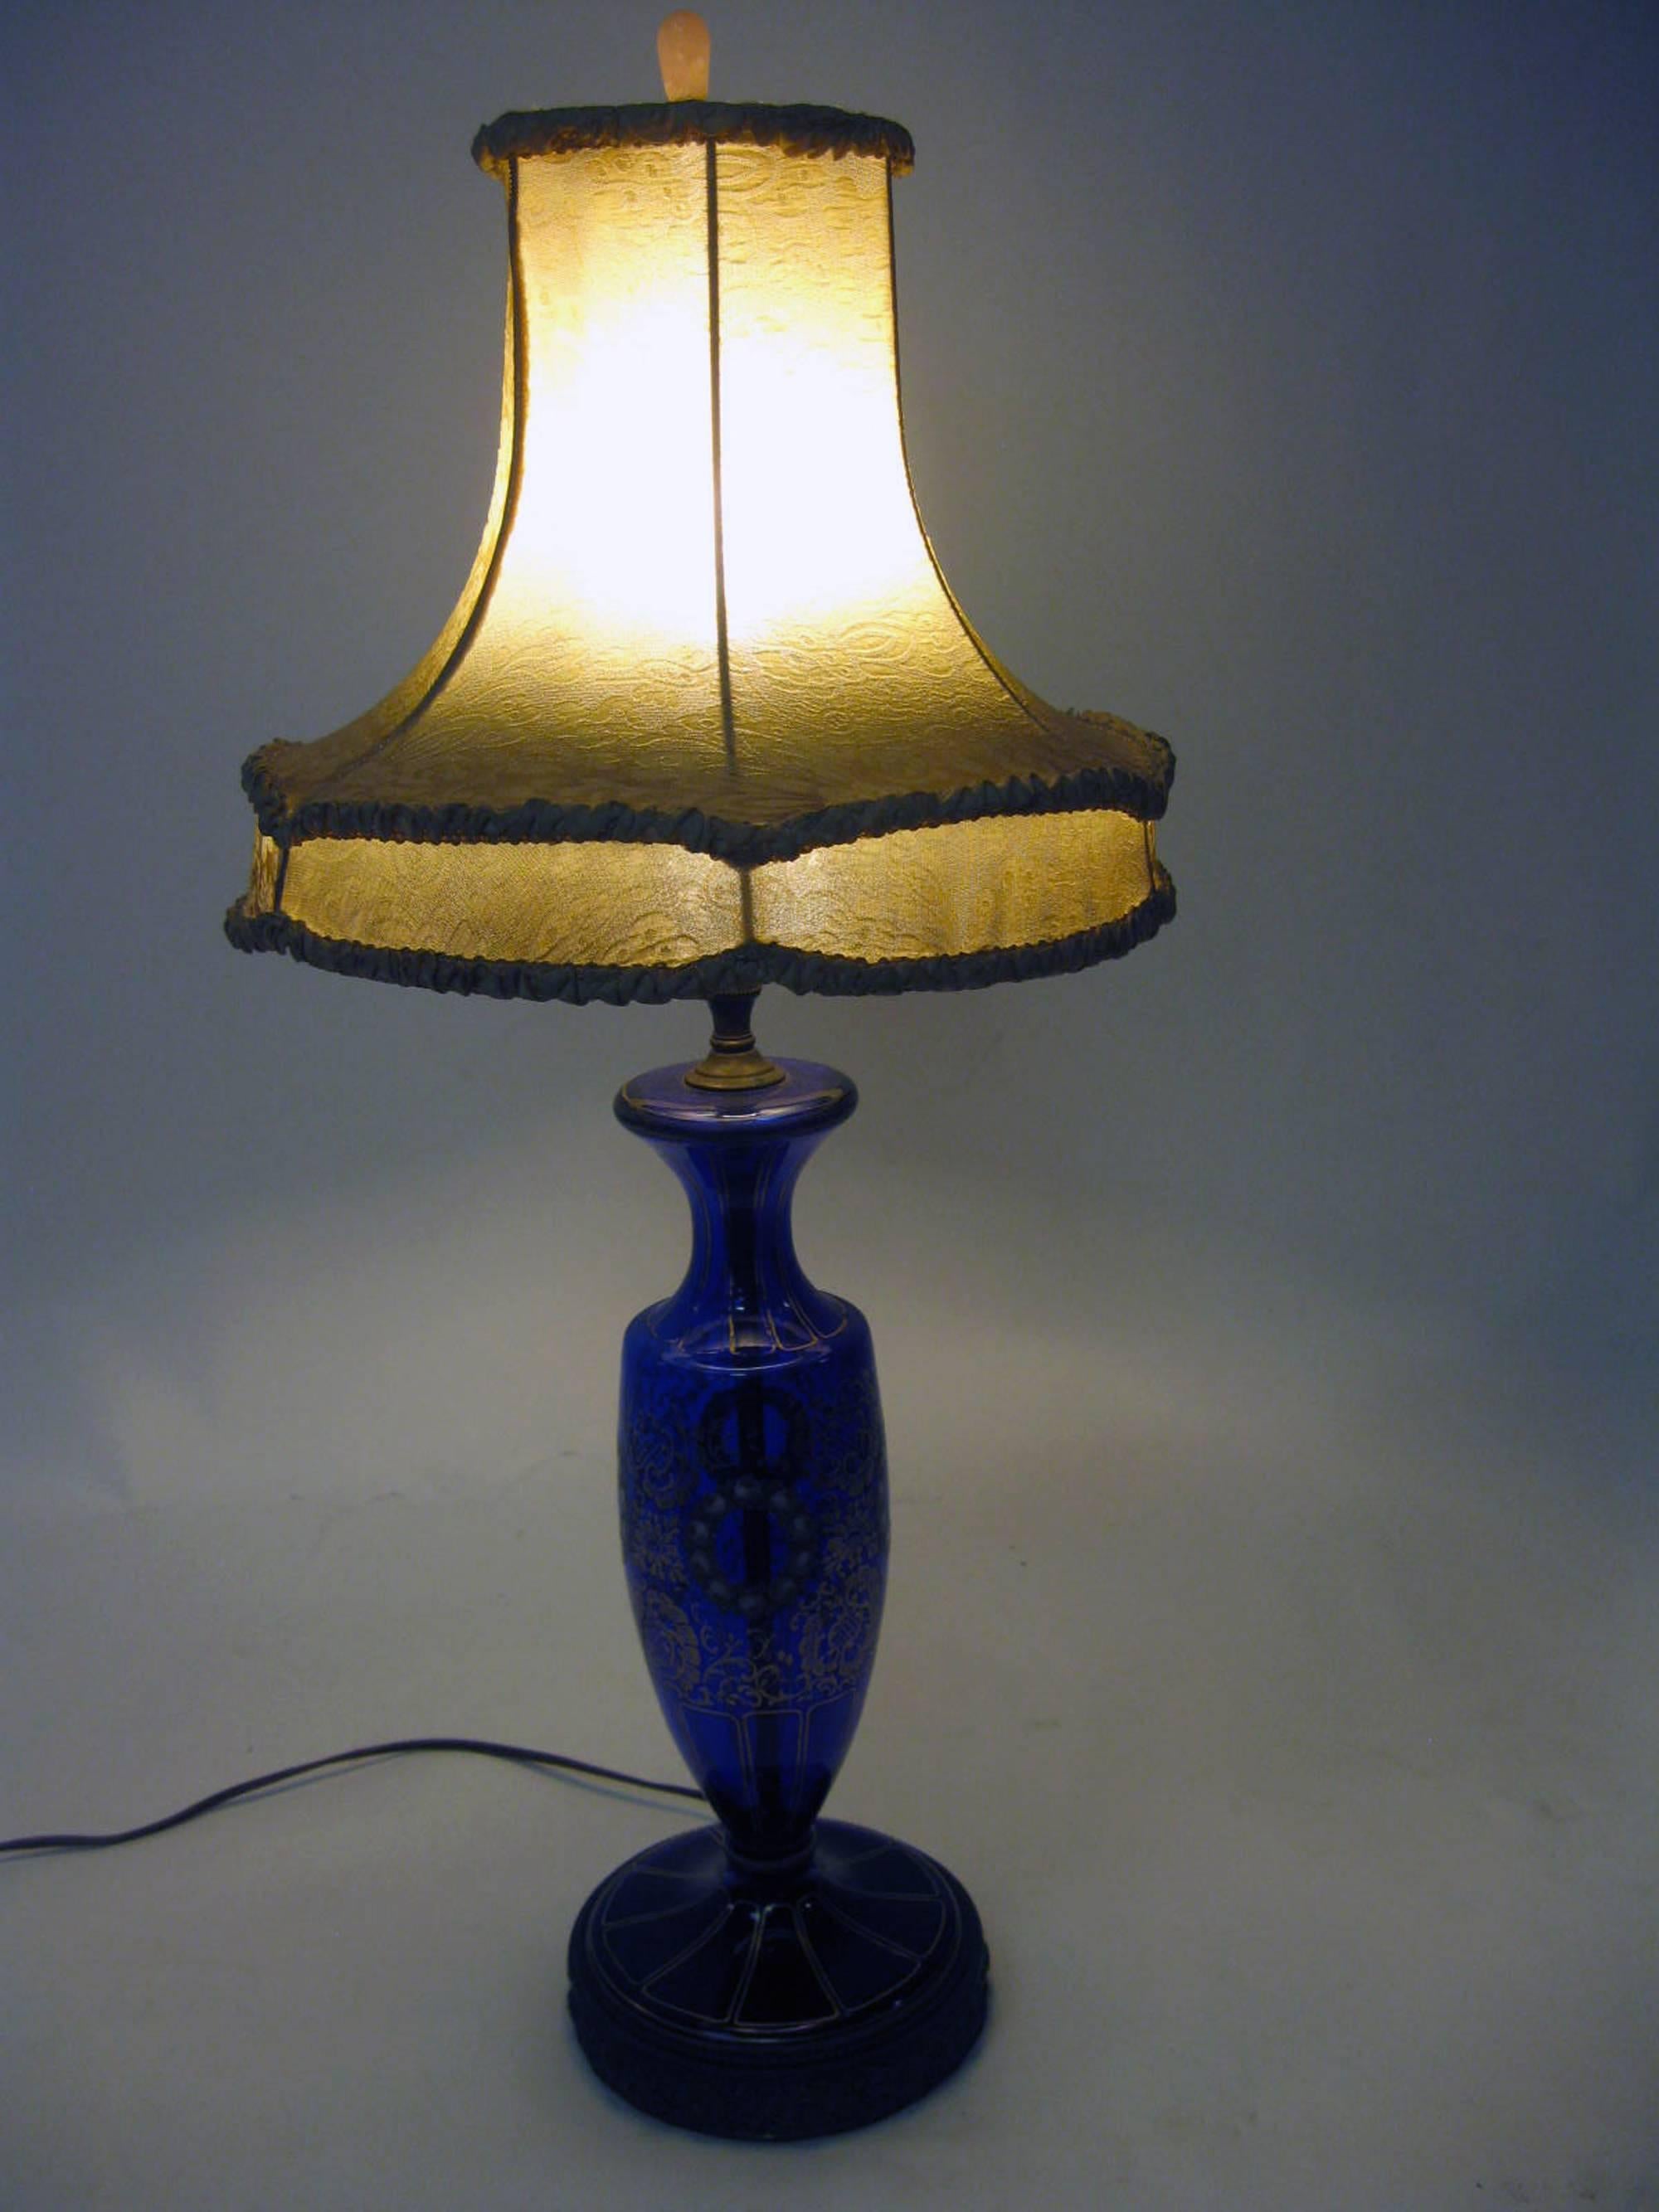 cobalt blue glass lamp